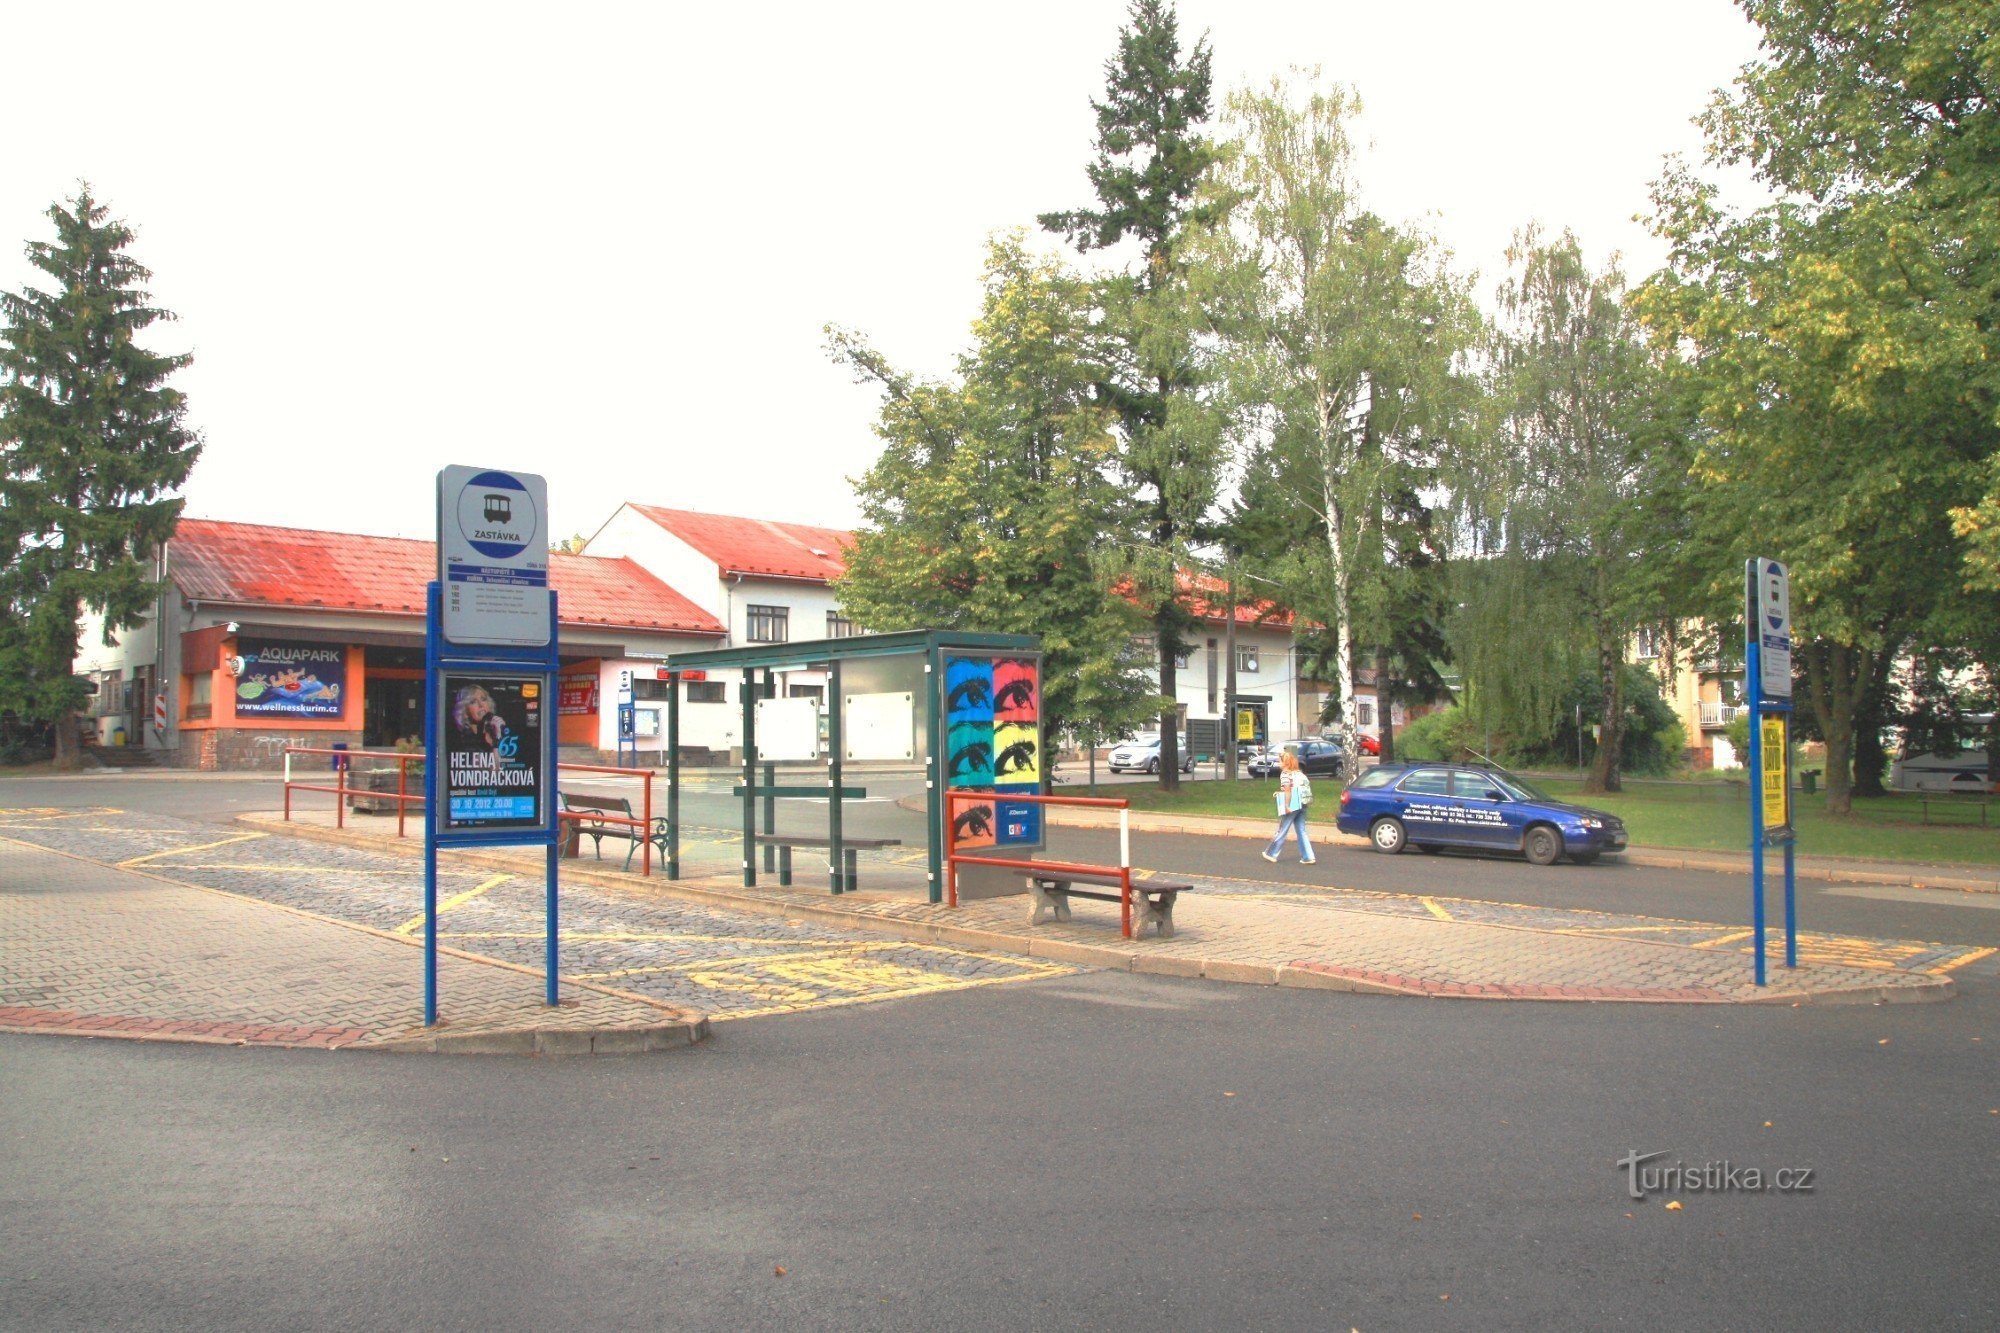 Kuřim - bus station